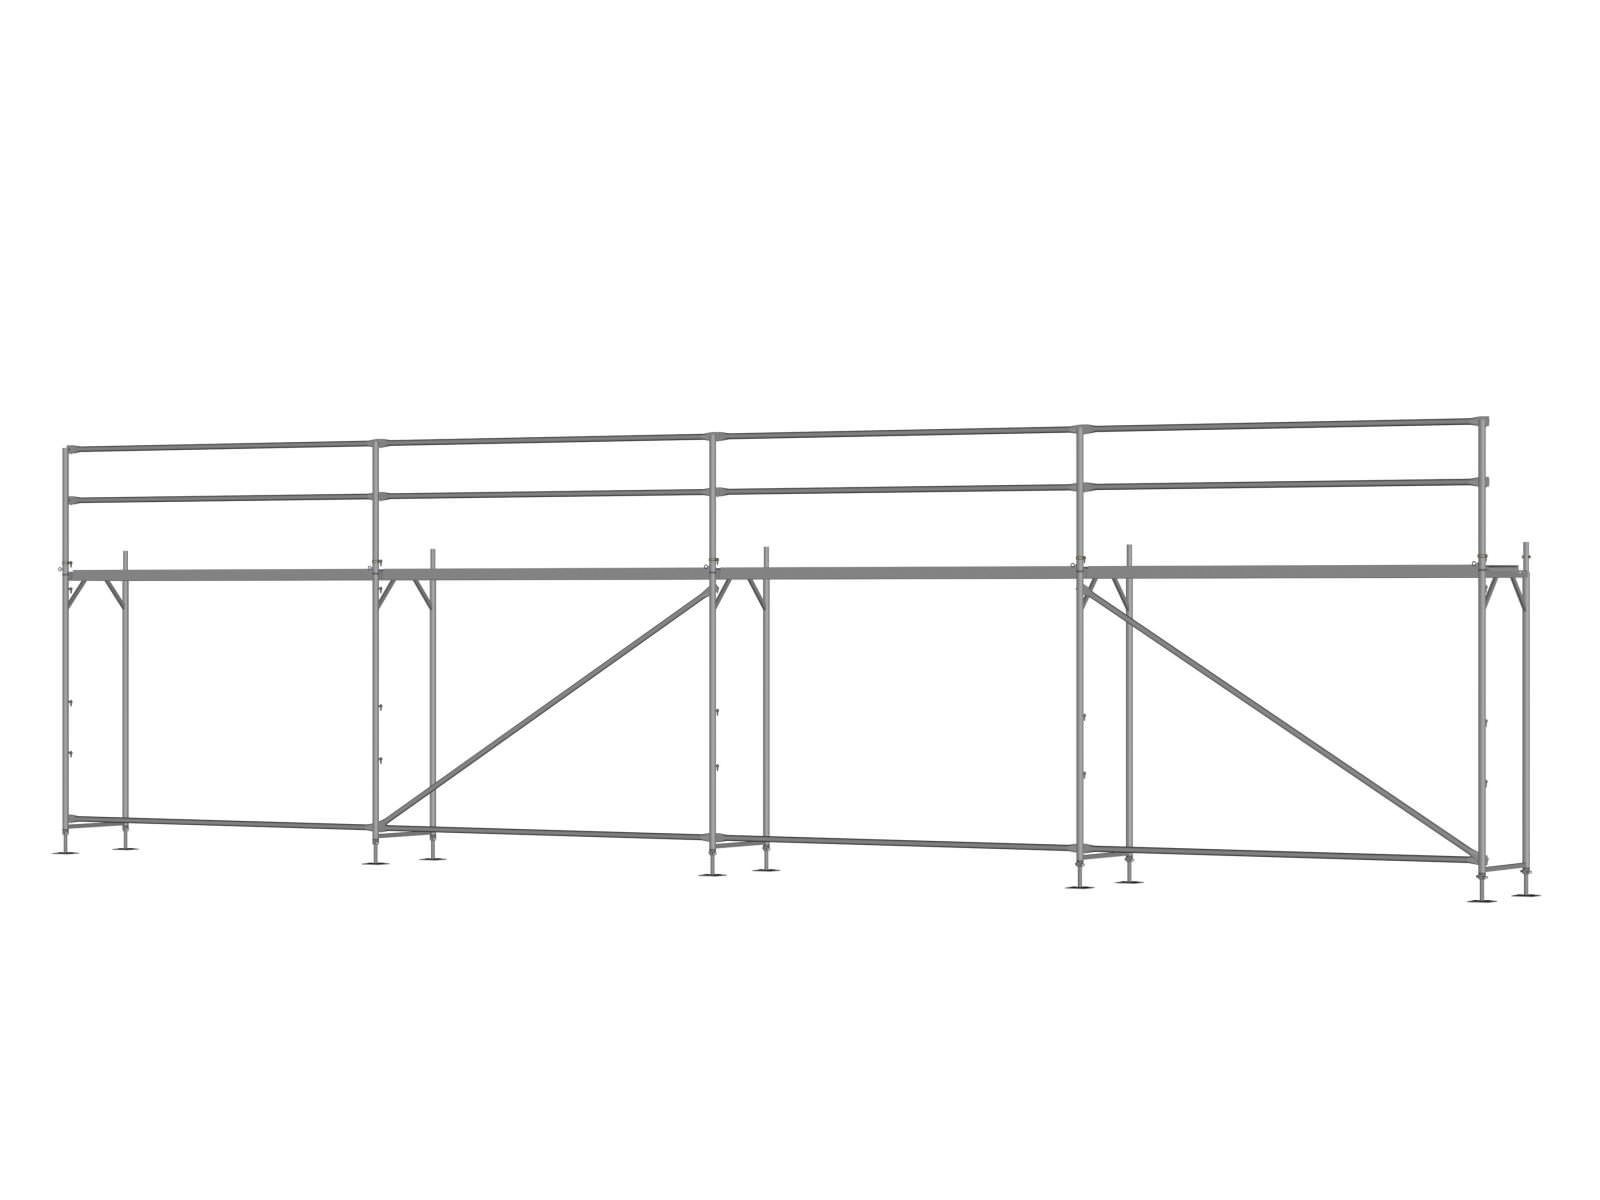 Alu Traufseitengerüst 48 qm - 3,0 m Felder - 12 m lang - 4 m Arbeitshöhe - Basis-Gerüst